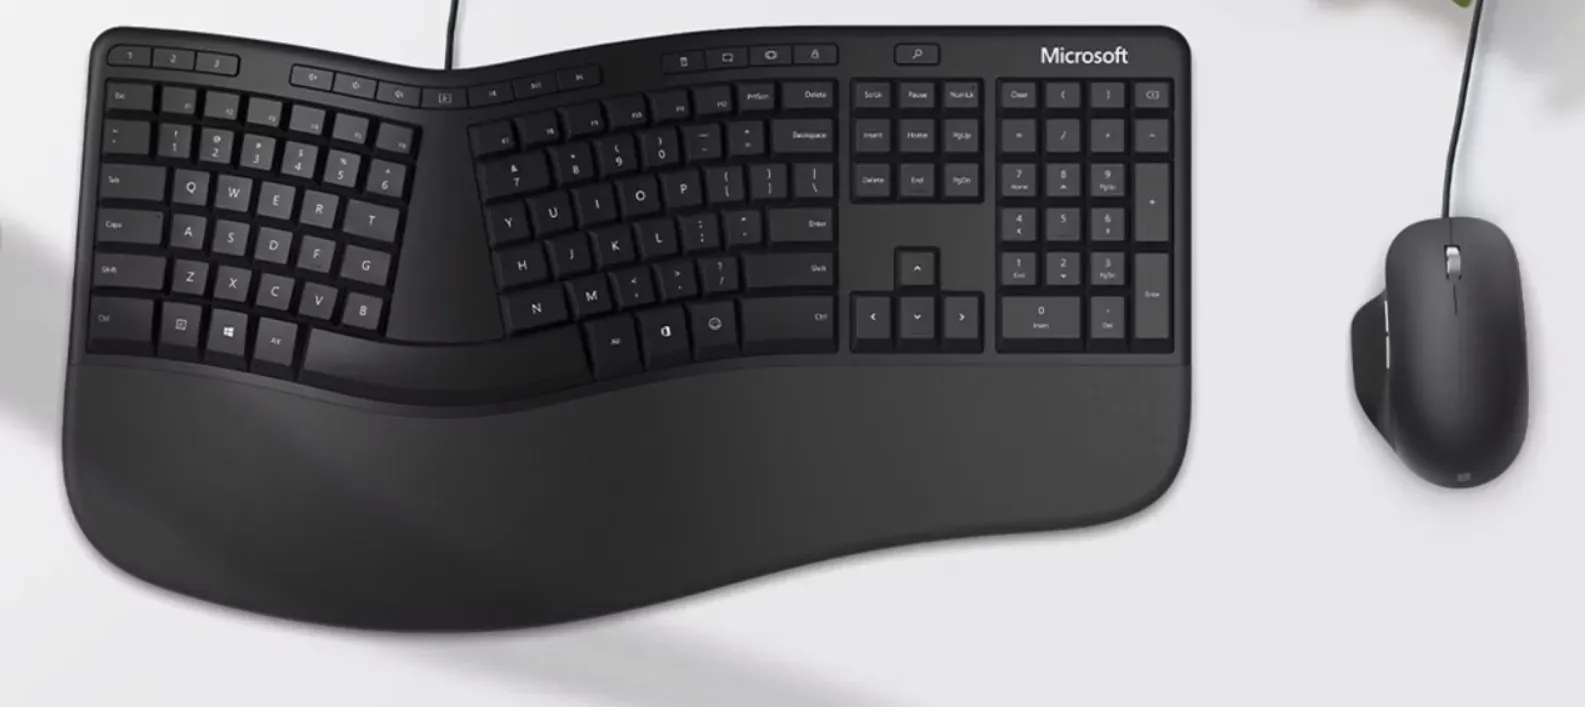 Microsofti ergonoomiline klaviatuur ja hiir võivad olla tükeldamisel, kuna ettevõte keskendub Surface'i kaubamärgiga tarvikutele.